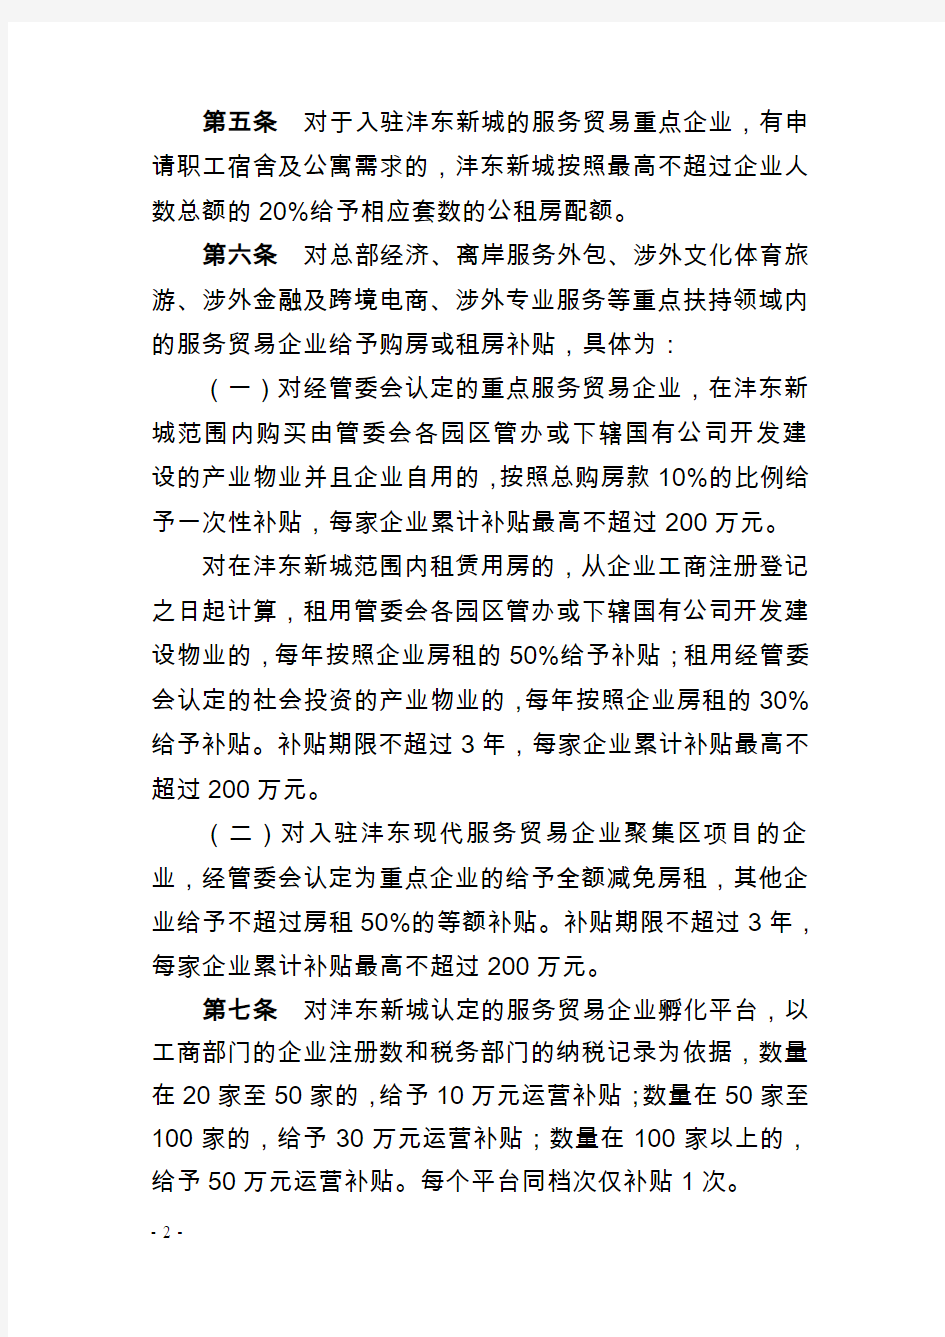 陕西西咸新区沣东新城管委会关于扶持服务贸易加快发展暂行办法